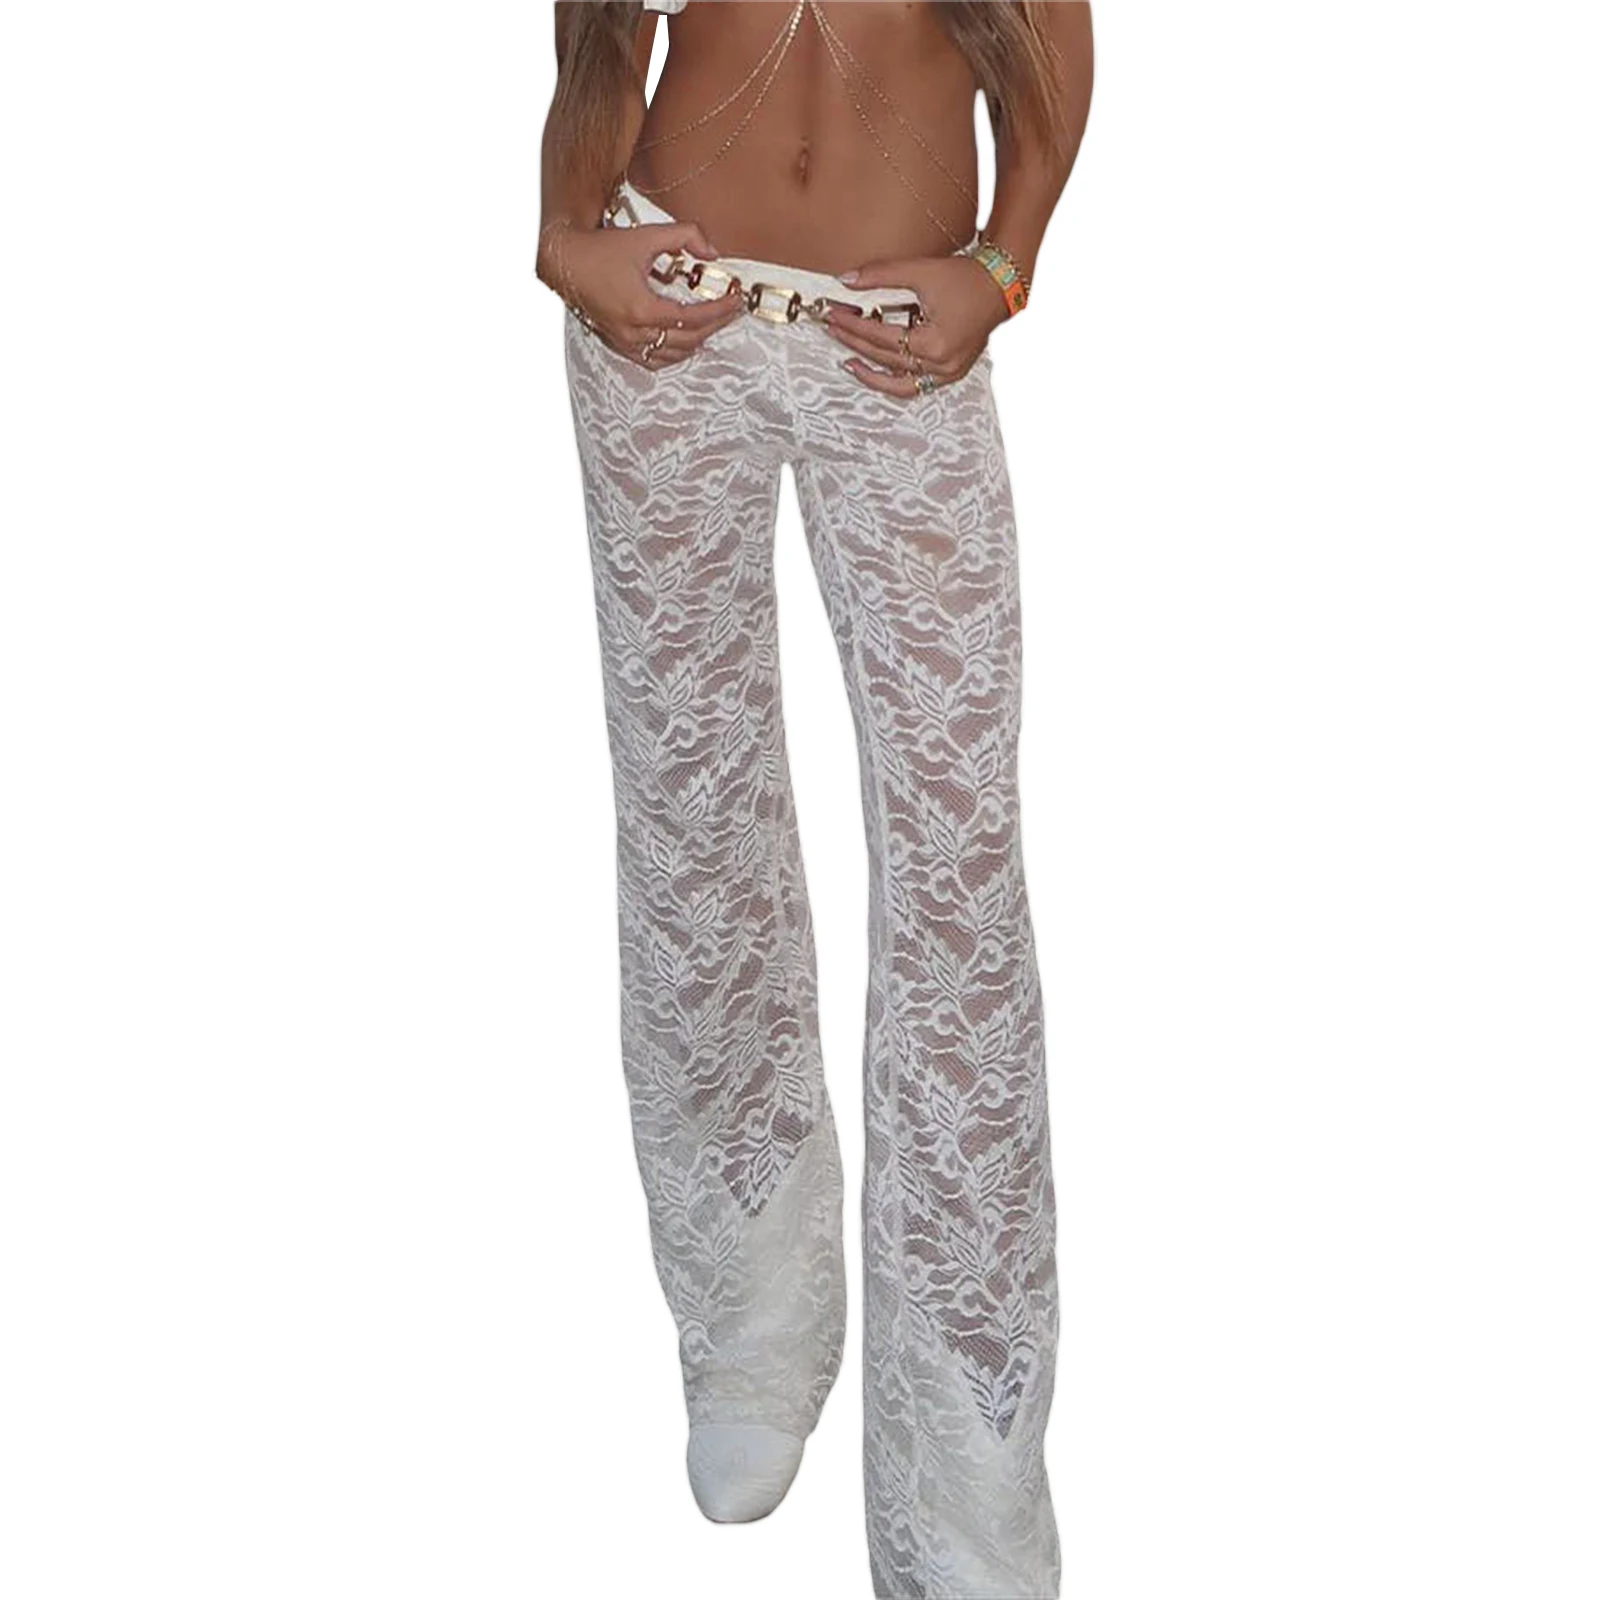 Женские кружевные брюки с цветочным рисунком, прозрачная сетка, эластичный пояс, облегающие брюки, летние повседневные прямые брюки.